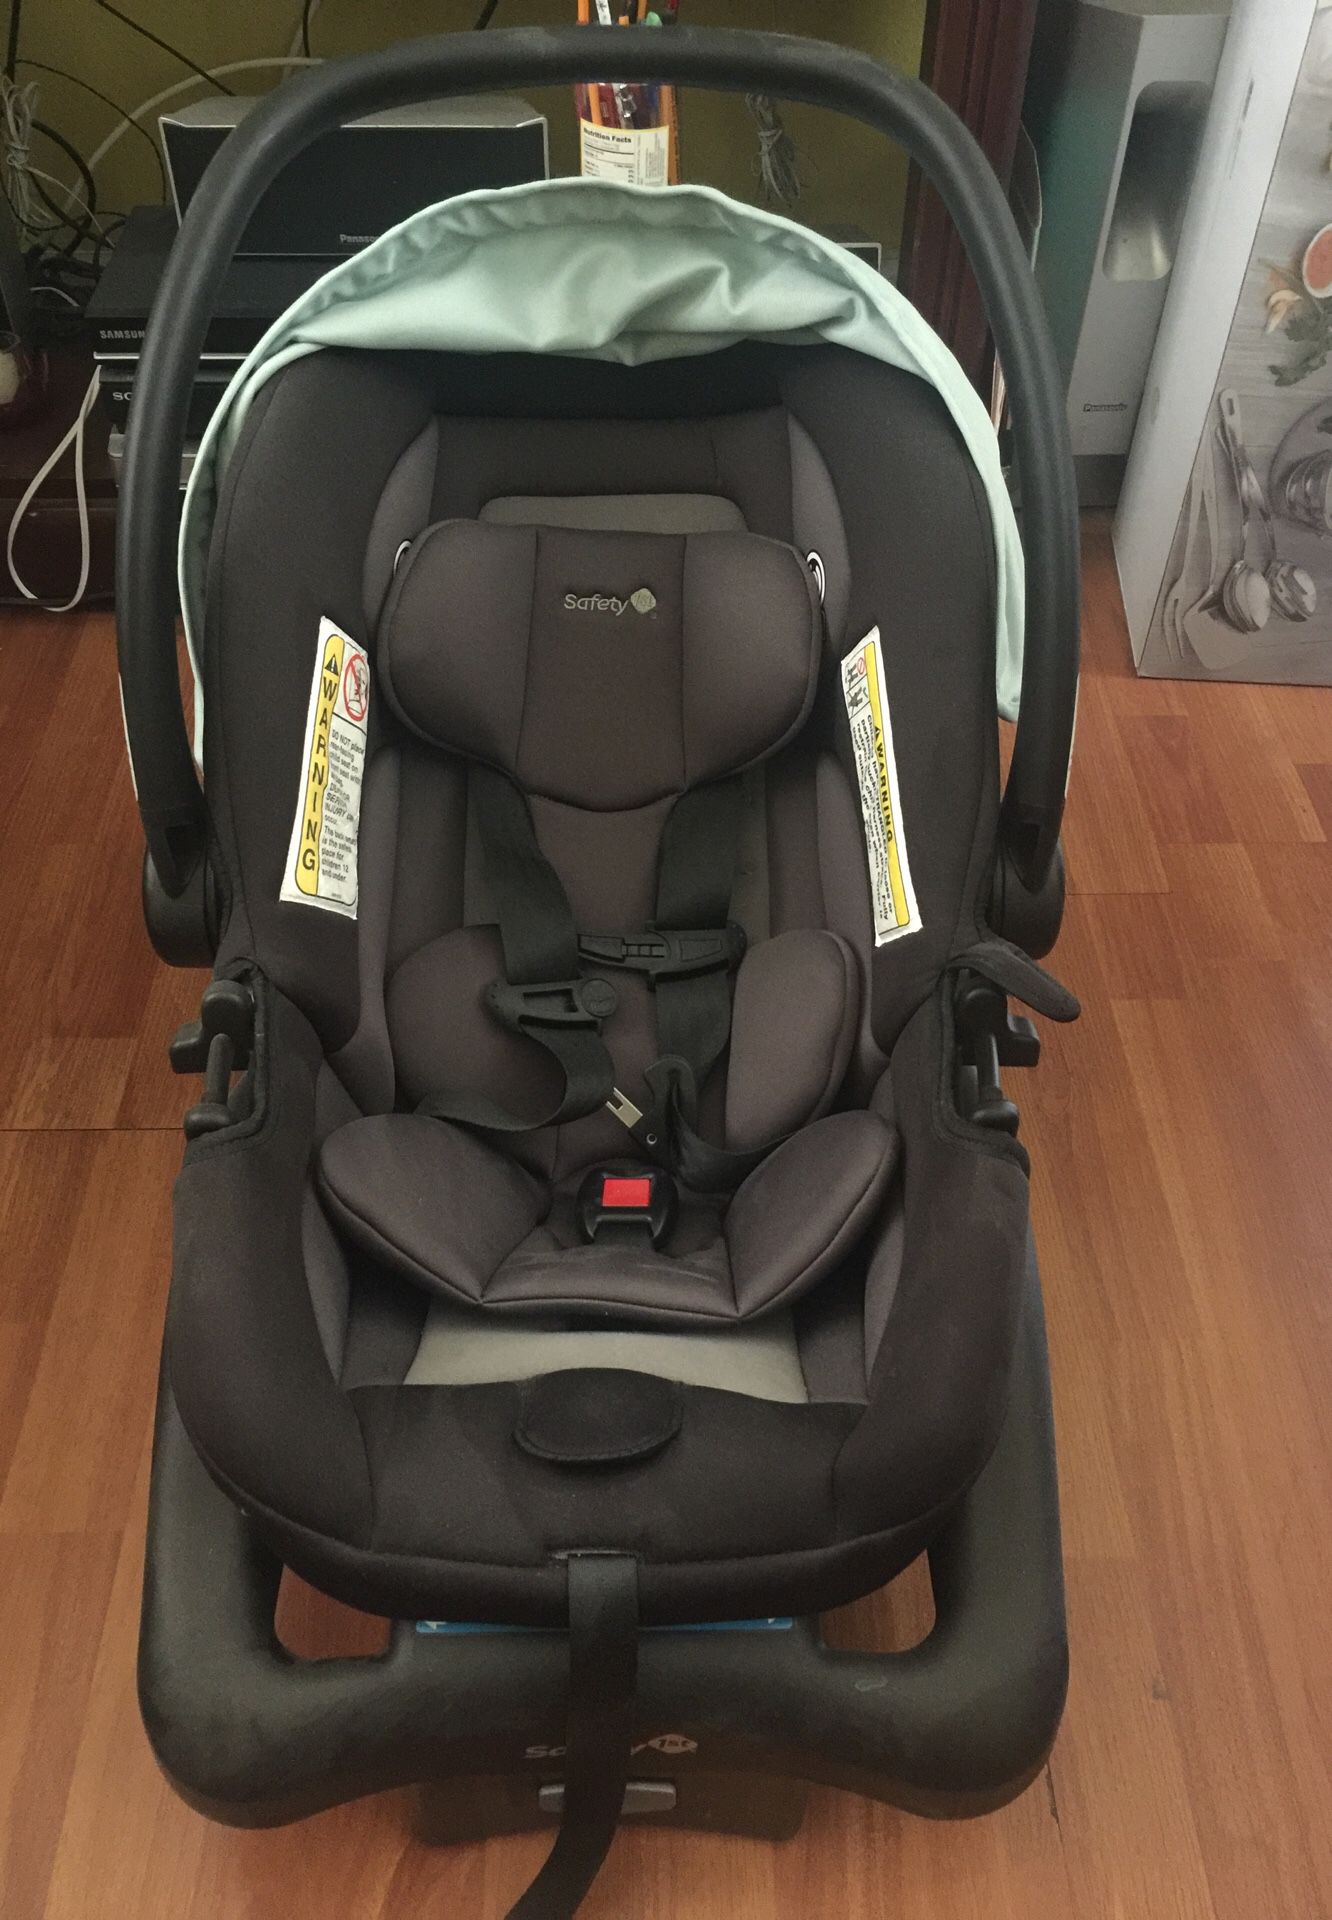 Free free Baby car seat